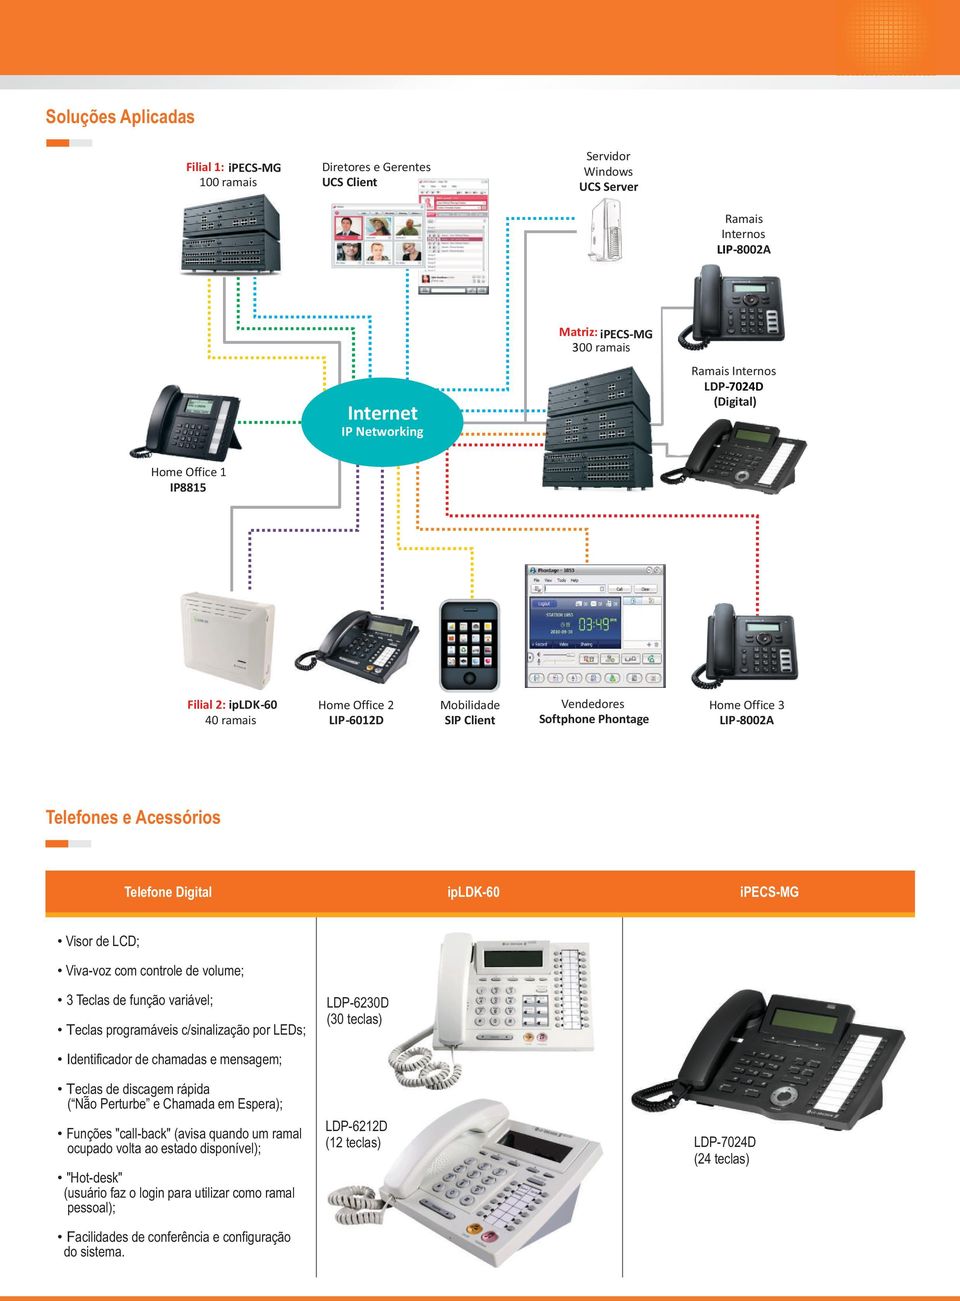 Acessórios Telefone Digital ipldk-60 ipecs-mg Visor de LCD; Viva-voz com controle de volume; 3 Teclas de função variável; Teclas programáveis c/sinalização por LEDs; LDP-6230D (30 teclas)